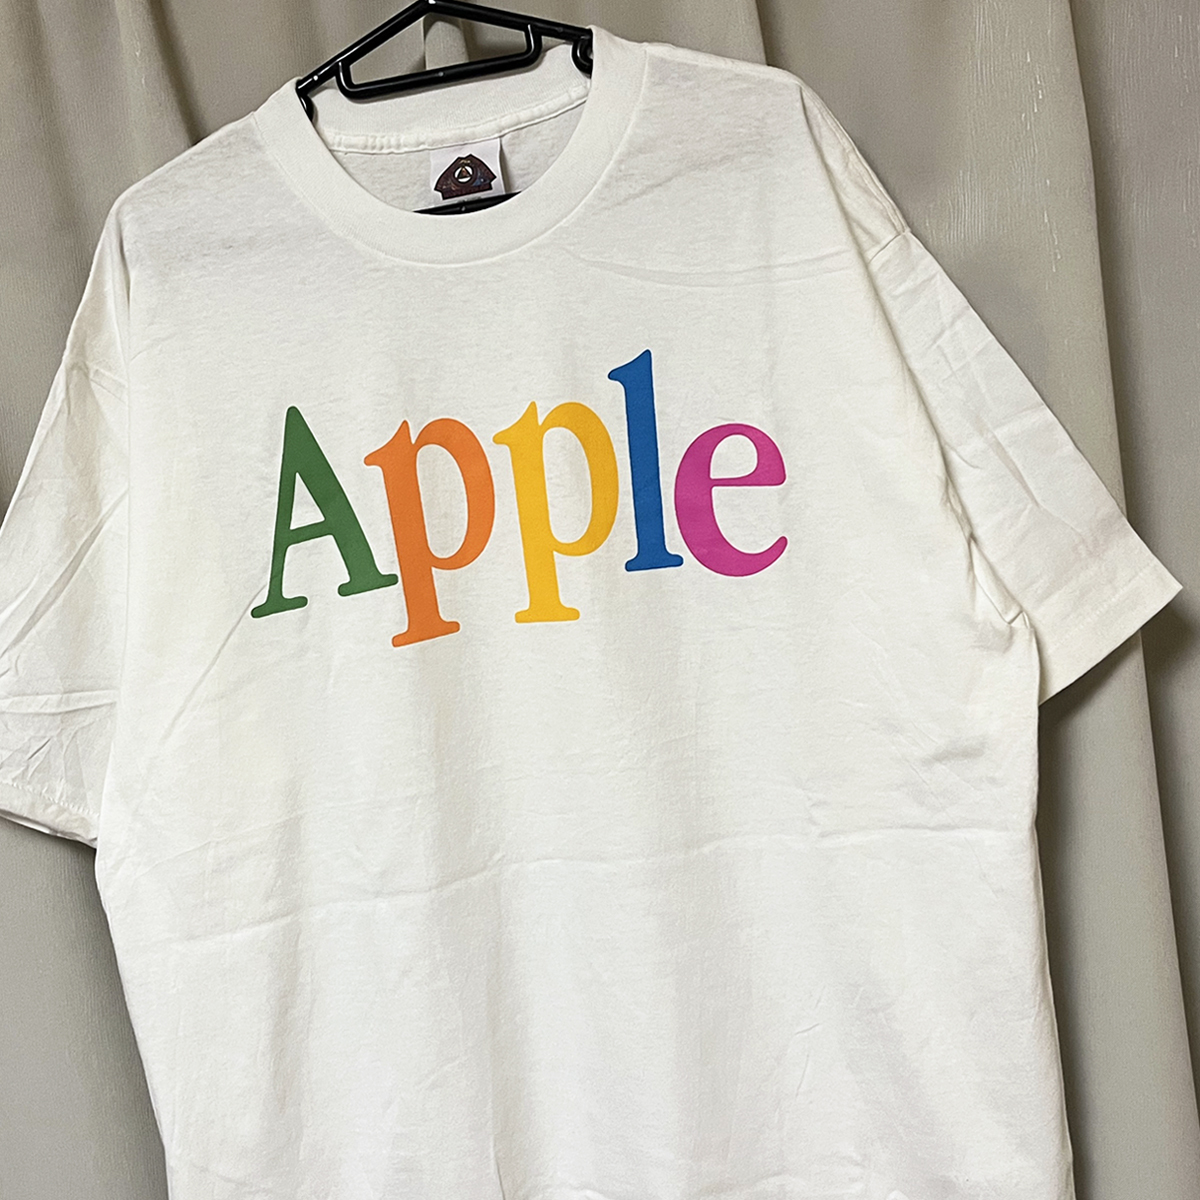 レア Mサイズ デッドストック 90s USA製 ビンテージ APPLE アップル ロゴ Tシャツ 白 アメリカ製 企業系 企業物 vintage 新品未使用 Google